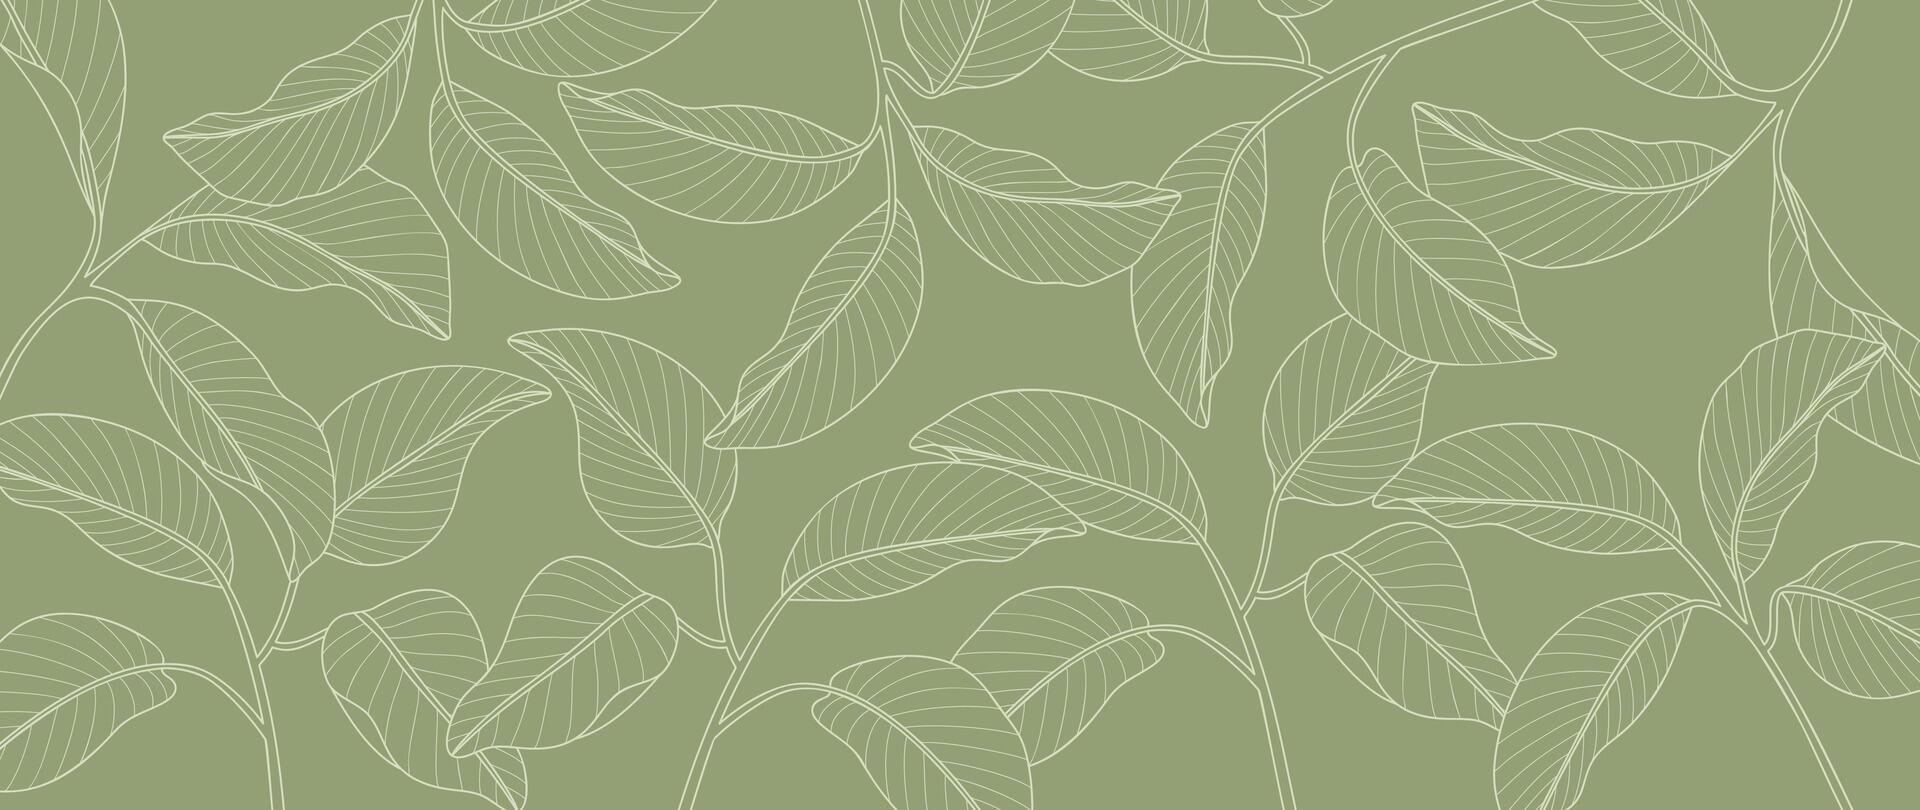 abstrait feuillage ligne art vecteur Contexte. feuille fond d'écran de tropical feuilles, feuille bifurquer, les plantes dans main tiré modèle. botanique jungle illustré pour bannière, impressions, décoration, tissu.